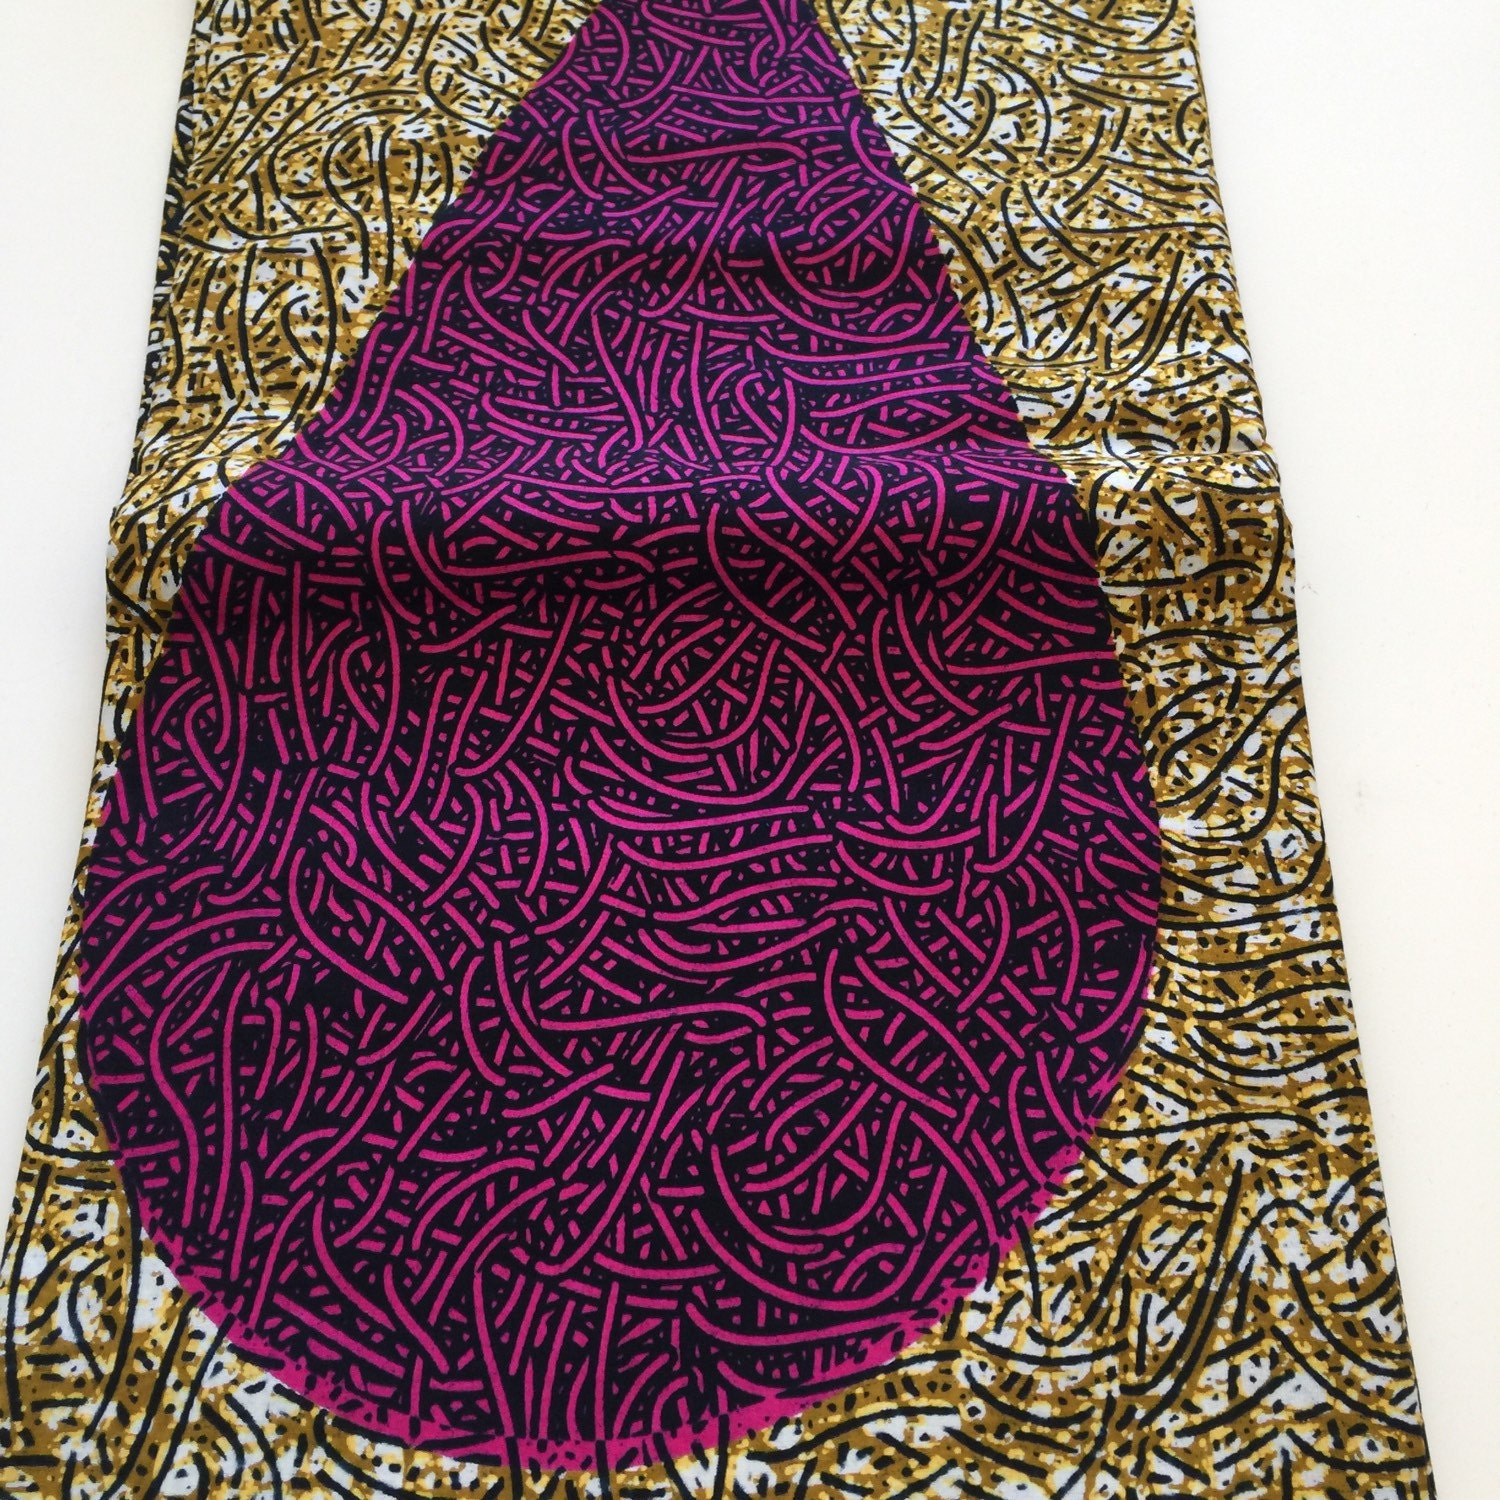 African Dutch Wax Print Fabric 6 Yards By Ludlowfabrics On Etsy